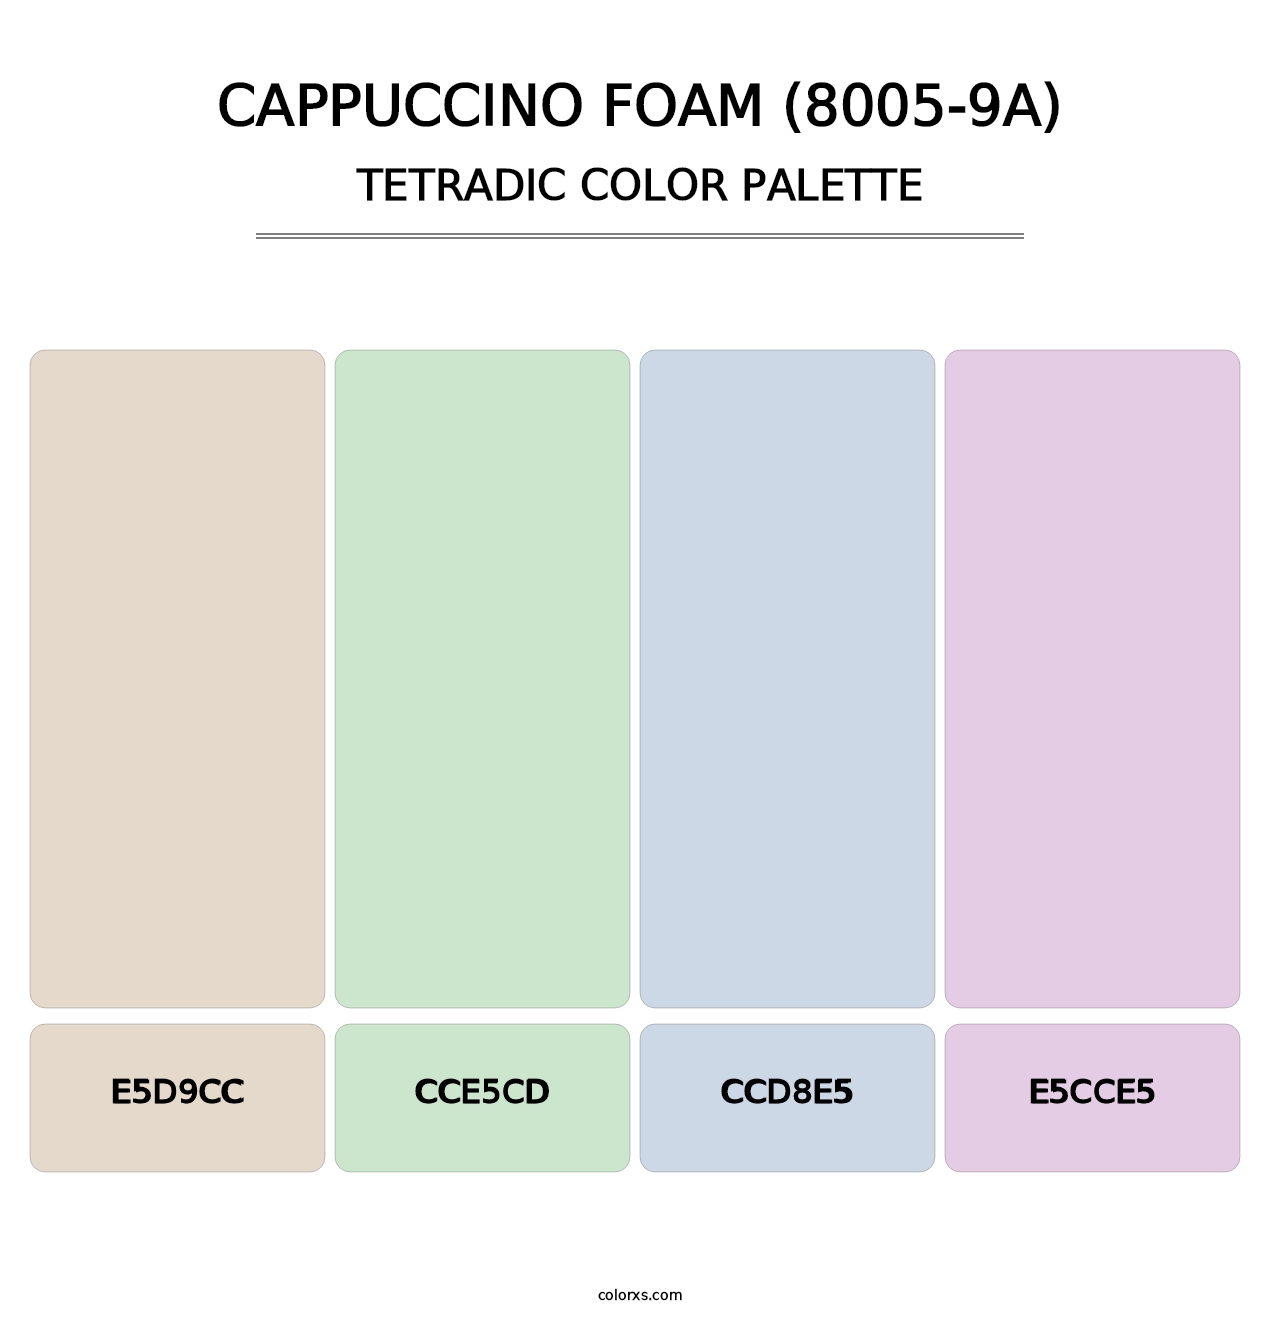 Cappuccino Foam (8005-9A) - Tetradic Color Palette